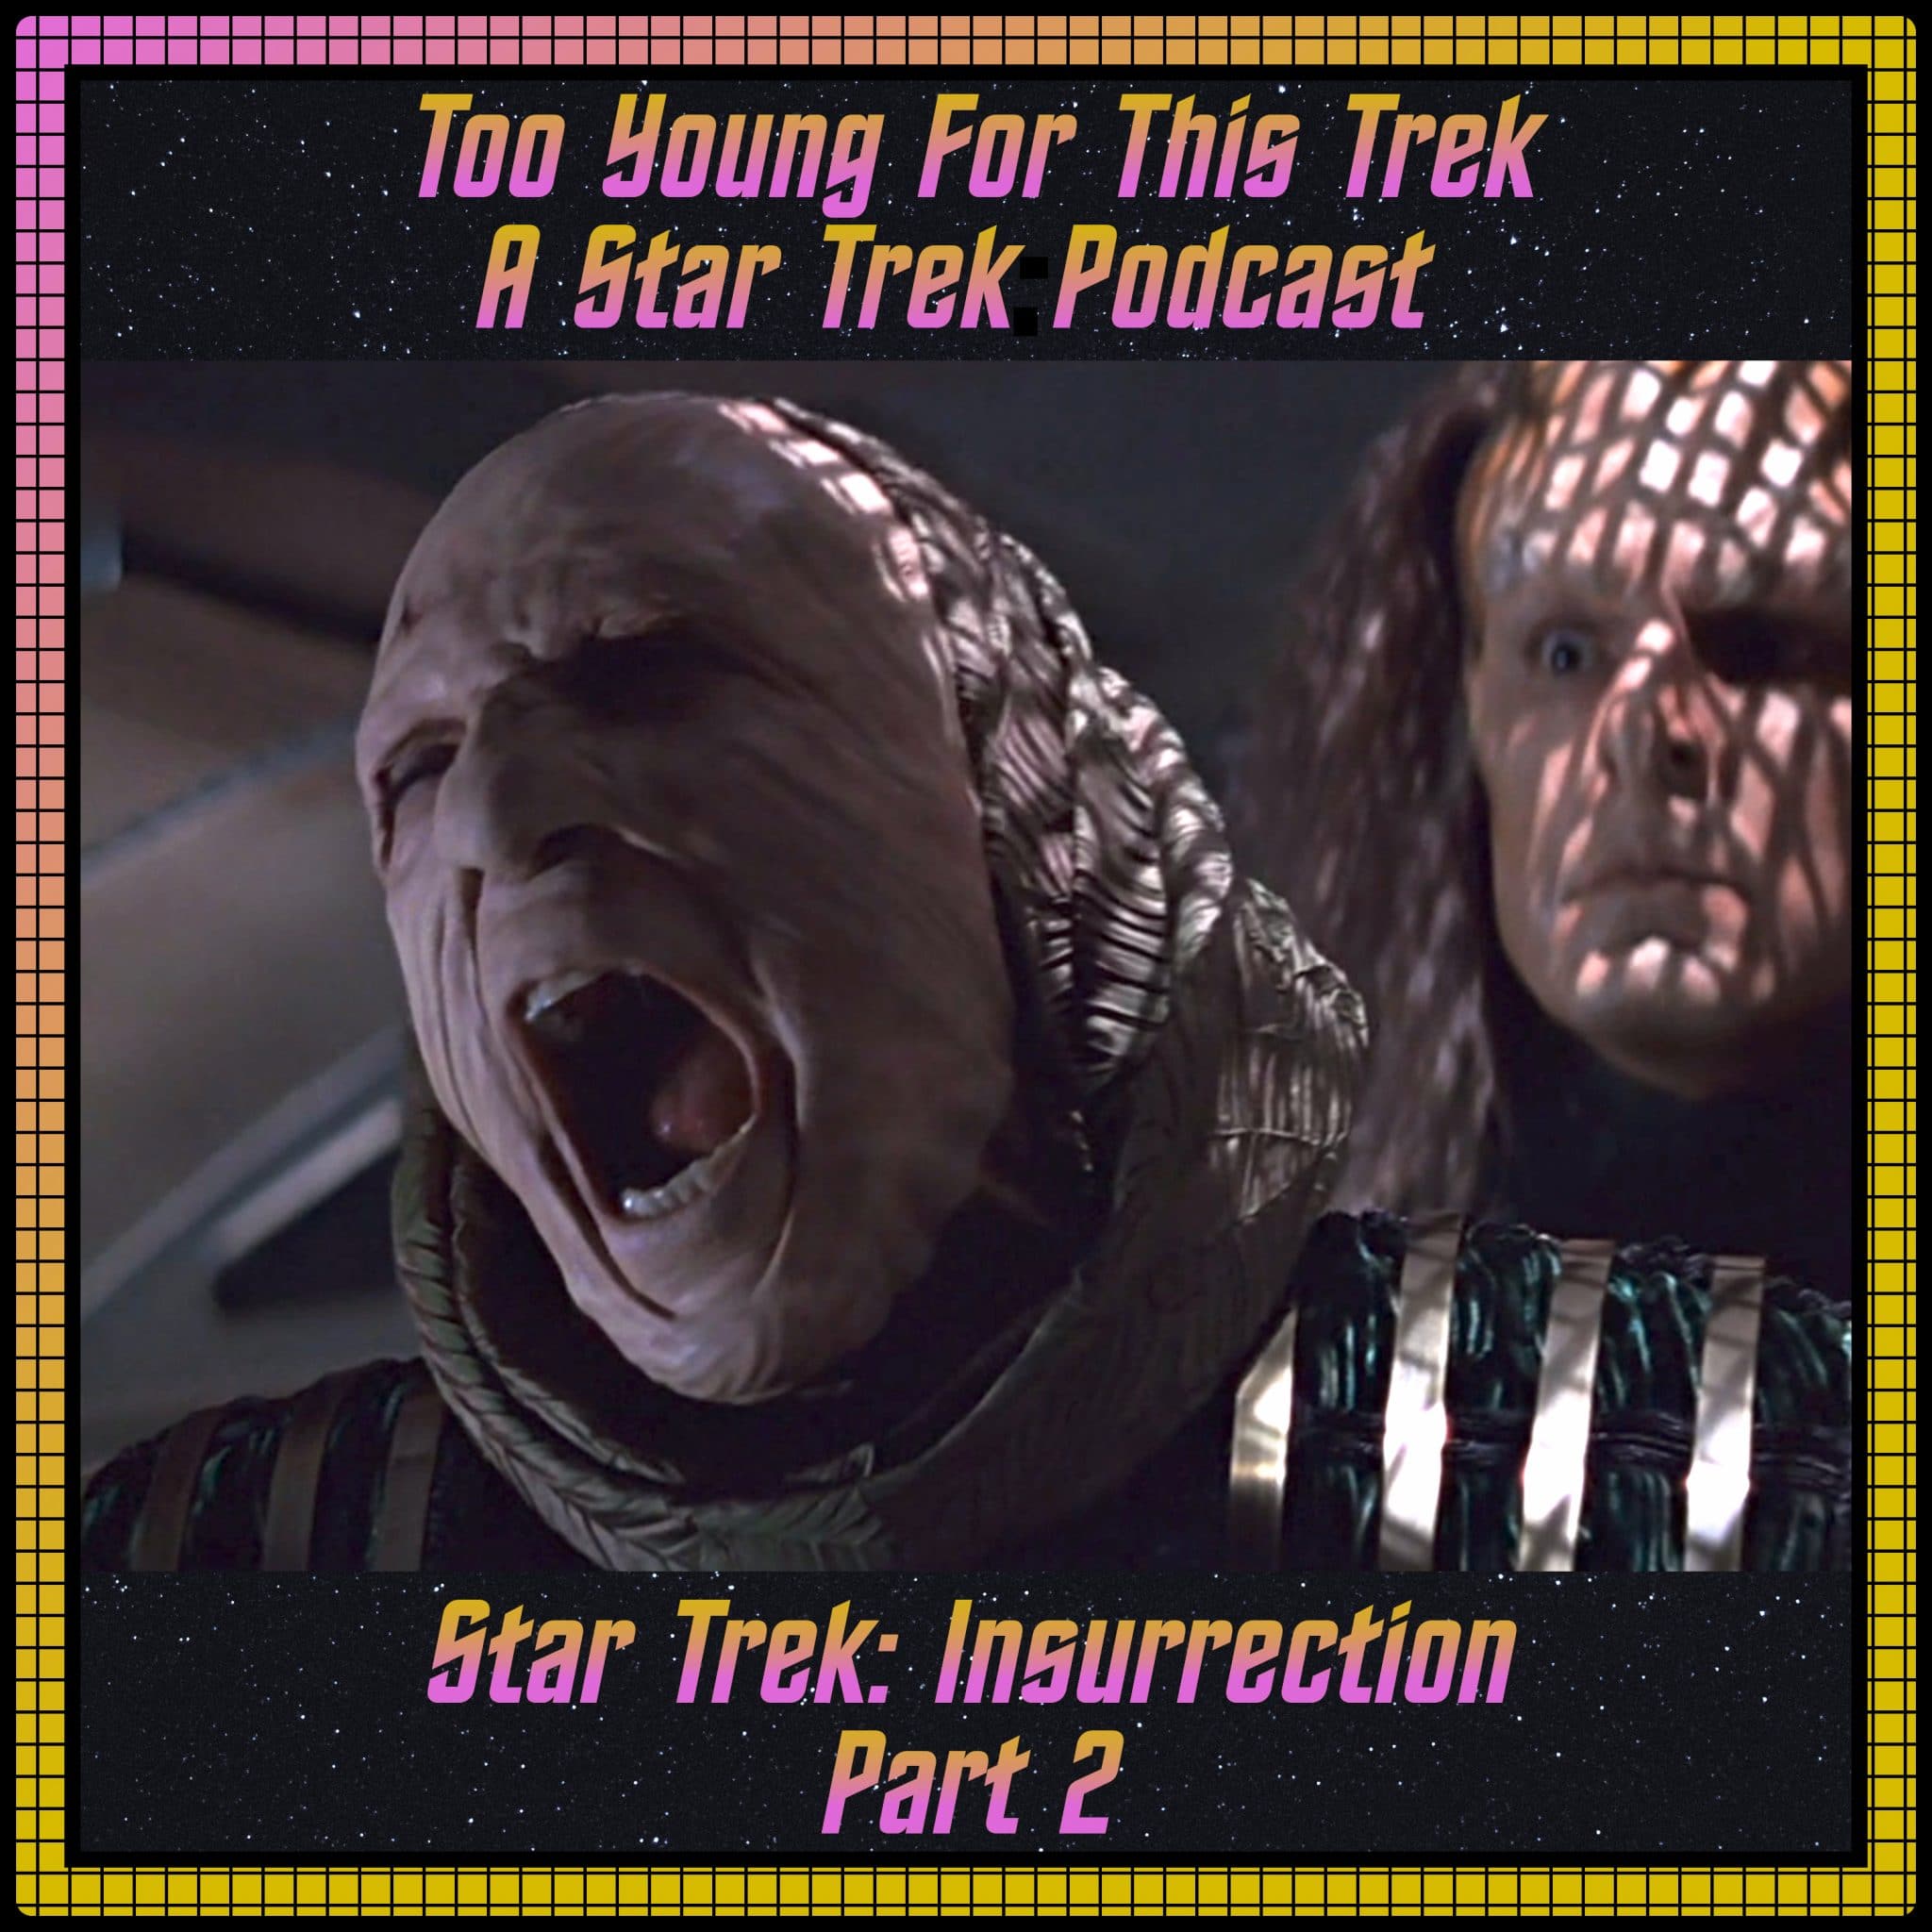 Star Trek: Insurrection - Part 2